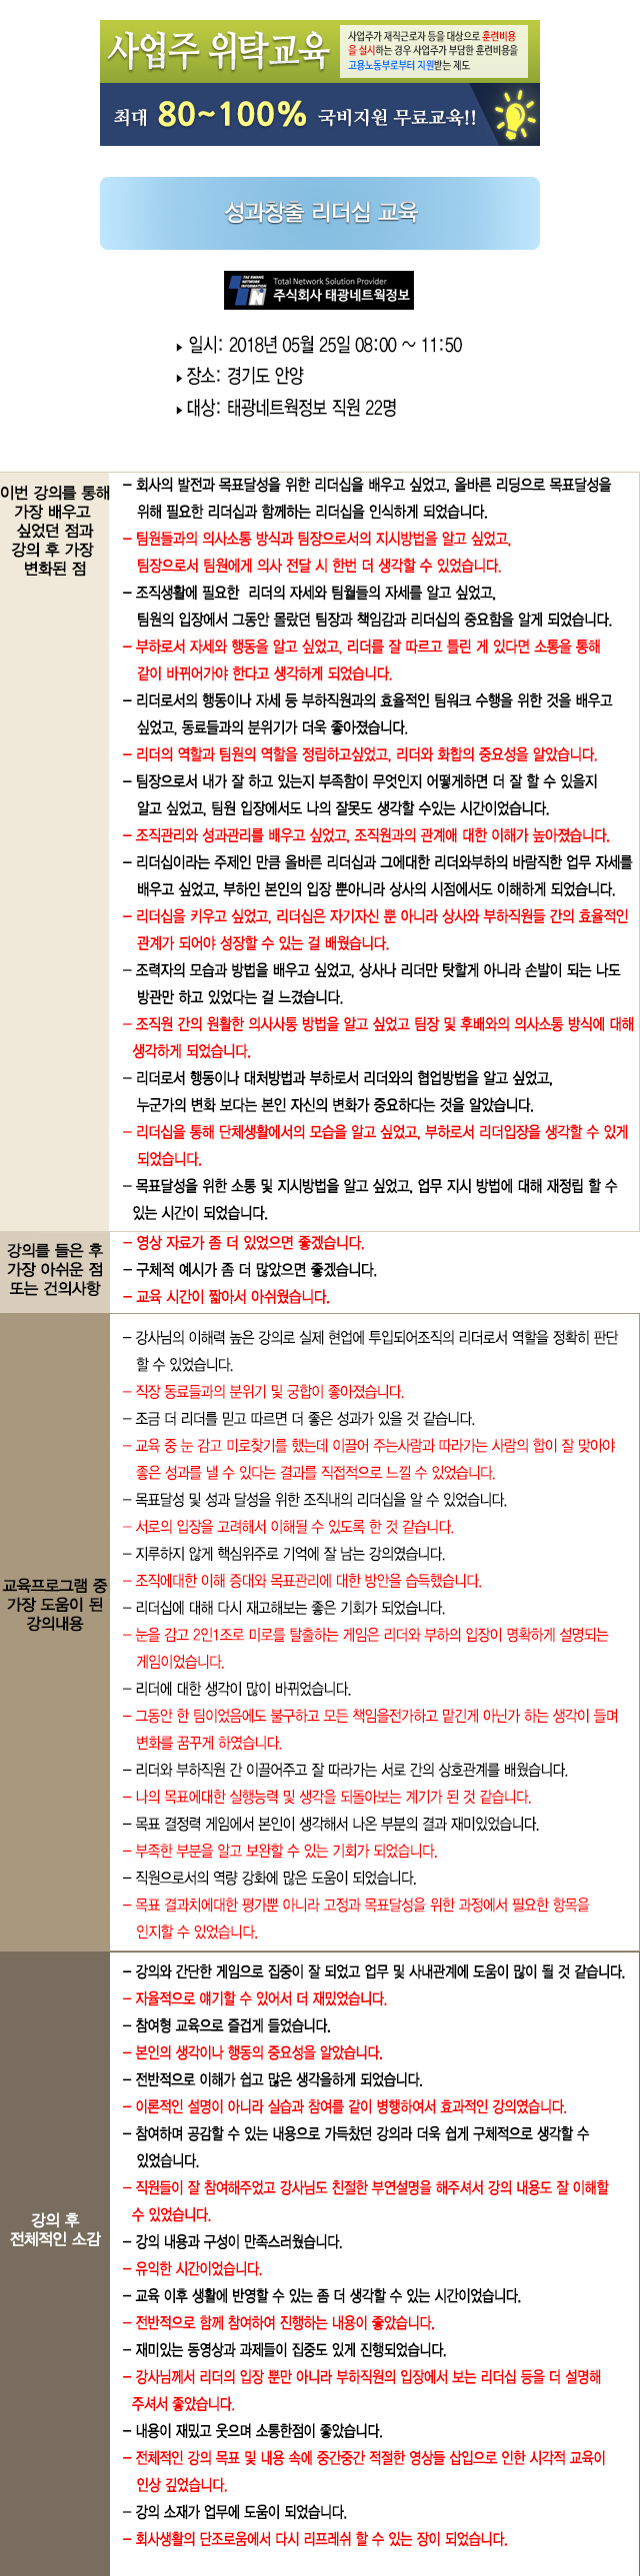 한국중앙인재개발원 후기 태광네트워크정보B.jpg